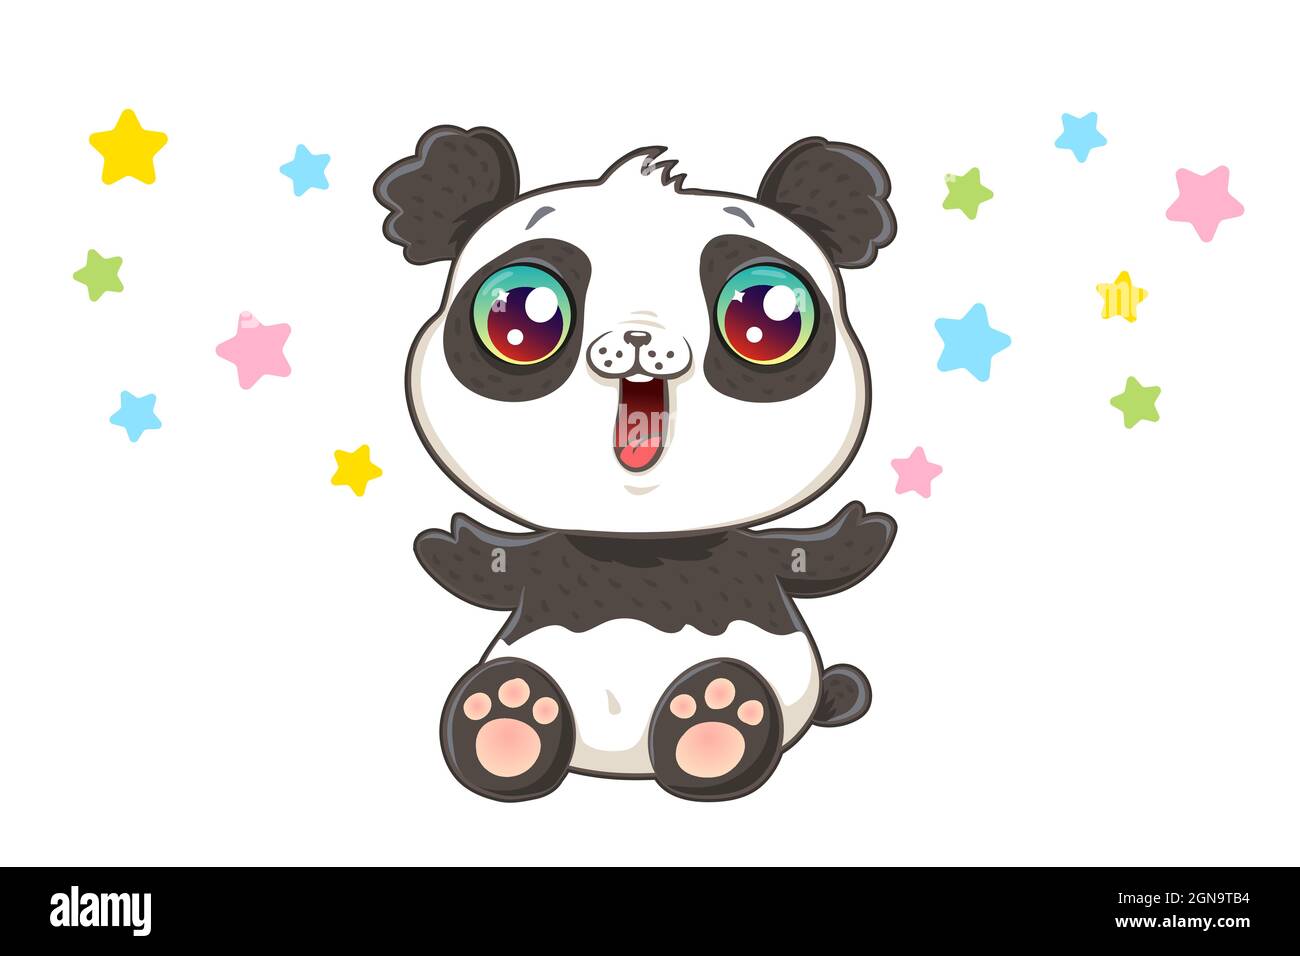 Illustrazione vettoriale di un panda carino in stile kawaii. Carino panda vettoriale con confetti. Illustrazione Vettoriale